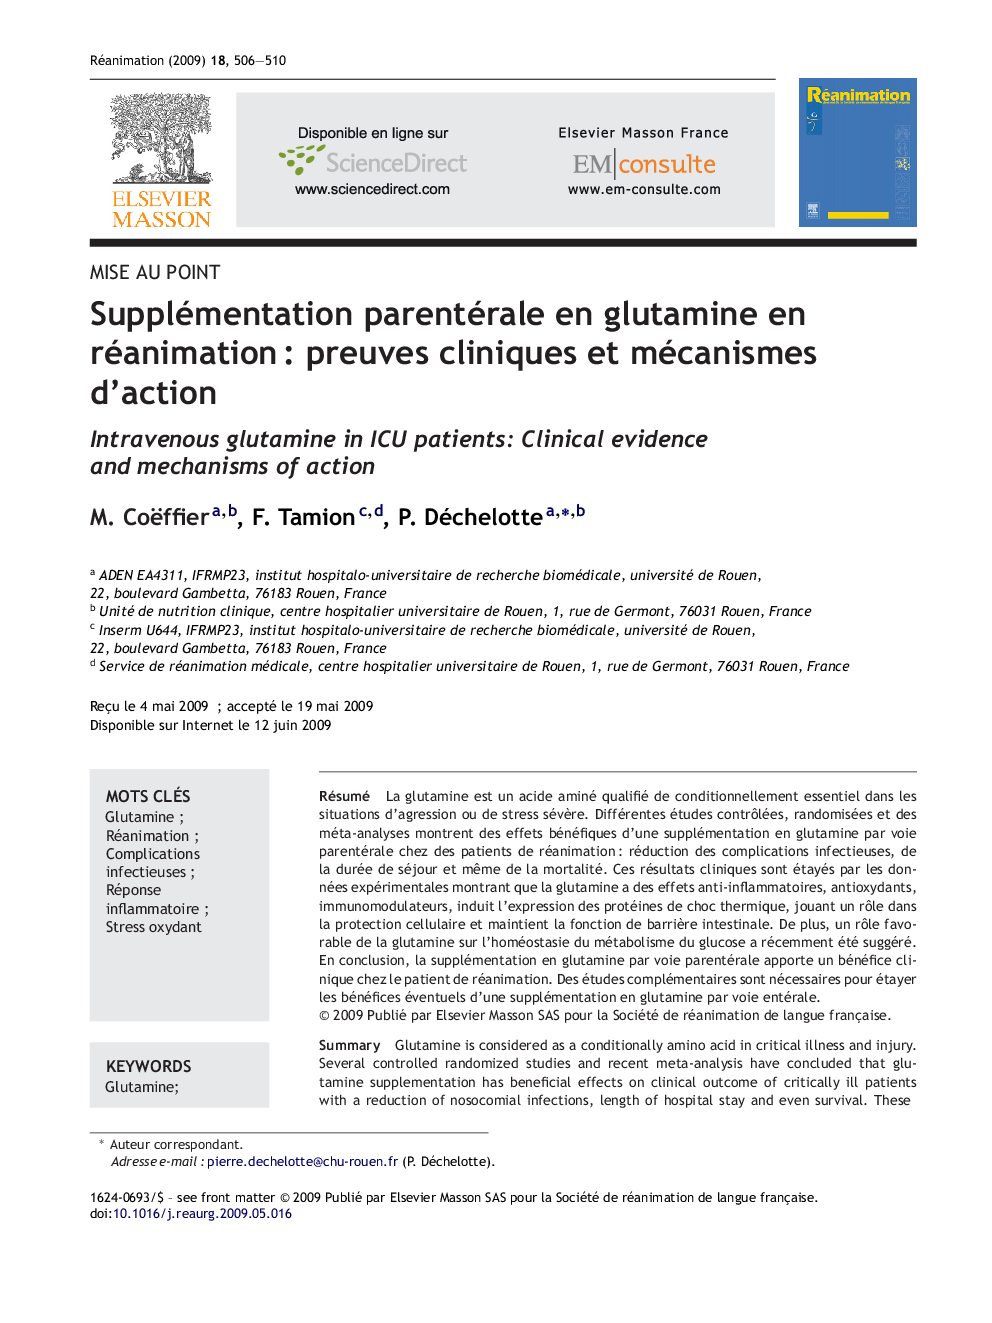 Supplémentation parentérale en glutamine en réanimationÂ : preuves cliniques et mécanismes d'action